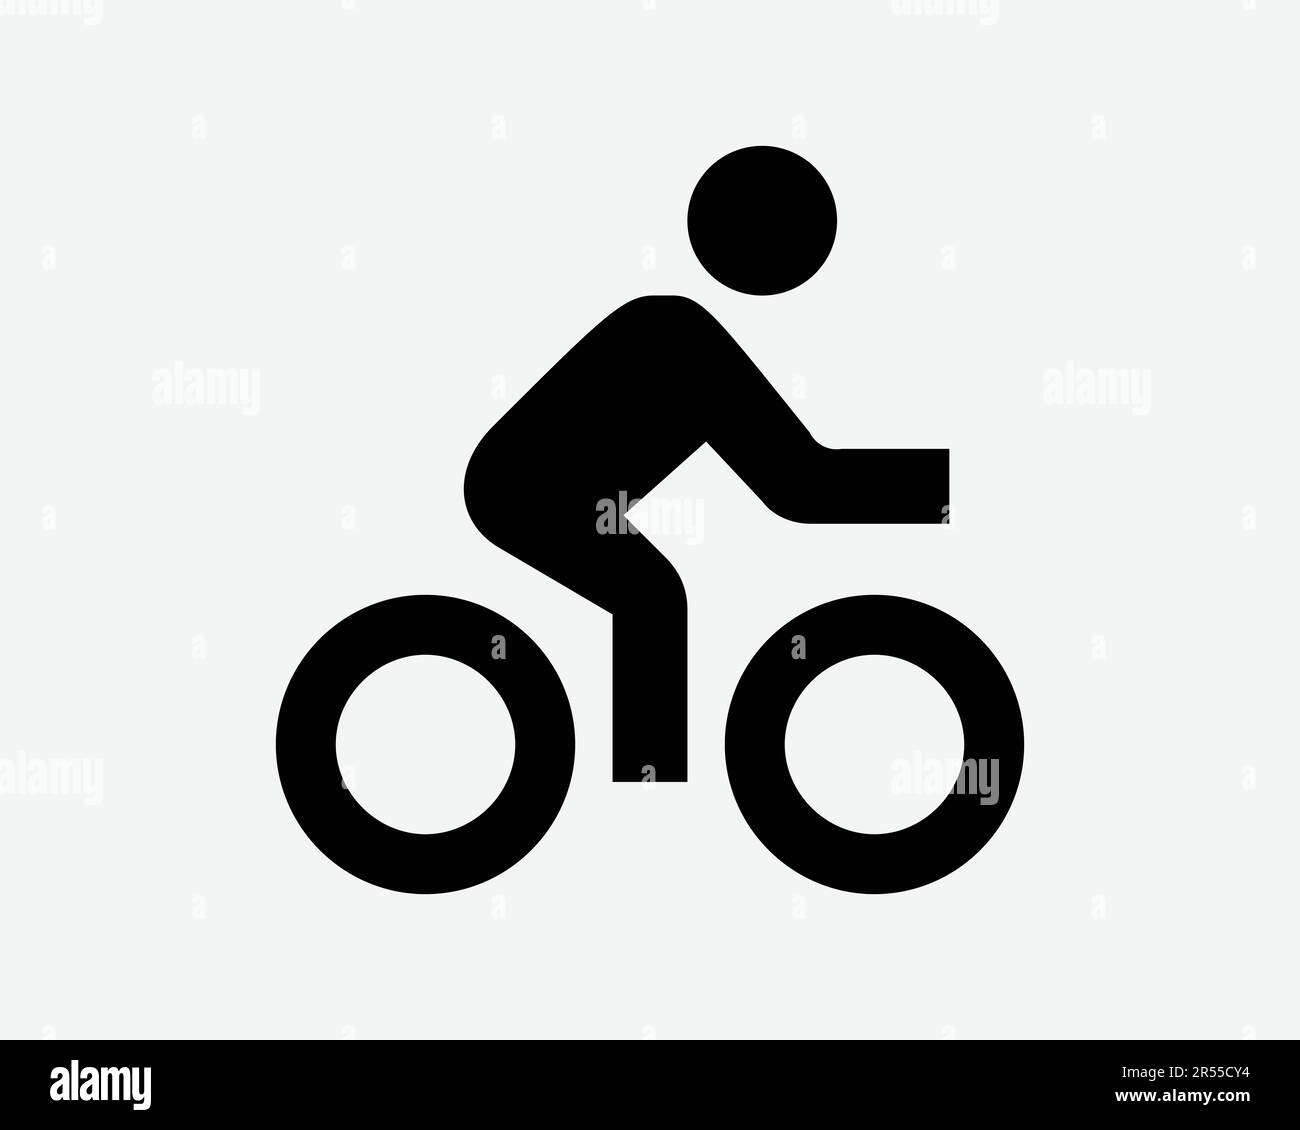 Symbol Für Radfahrer. Fahrrad Fahrrad Fahrrad Fahrrad Sport Race Biking Übung gesunde Lebensweise Zeichen-Symbol Schwarze Kunstwerke Grafik Clipart EPS Vektor Stock Vektor